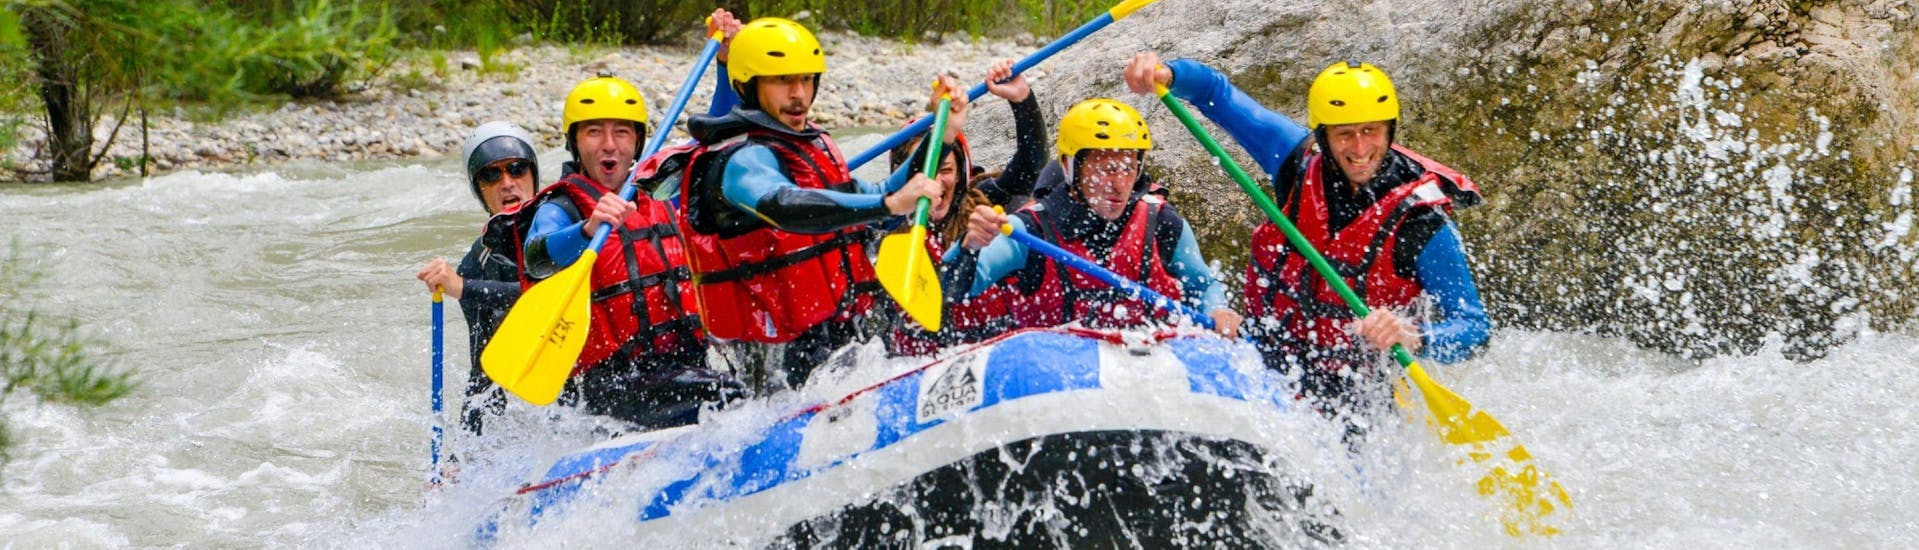 Degli amici stanno cercando di superare delle rapide del fiume Verdon durante una delle discese organizzate da Yeti Rafting.